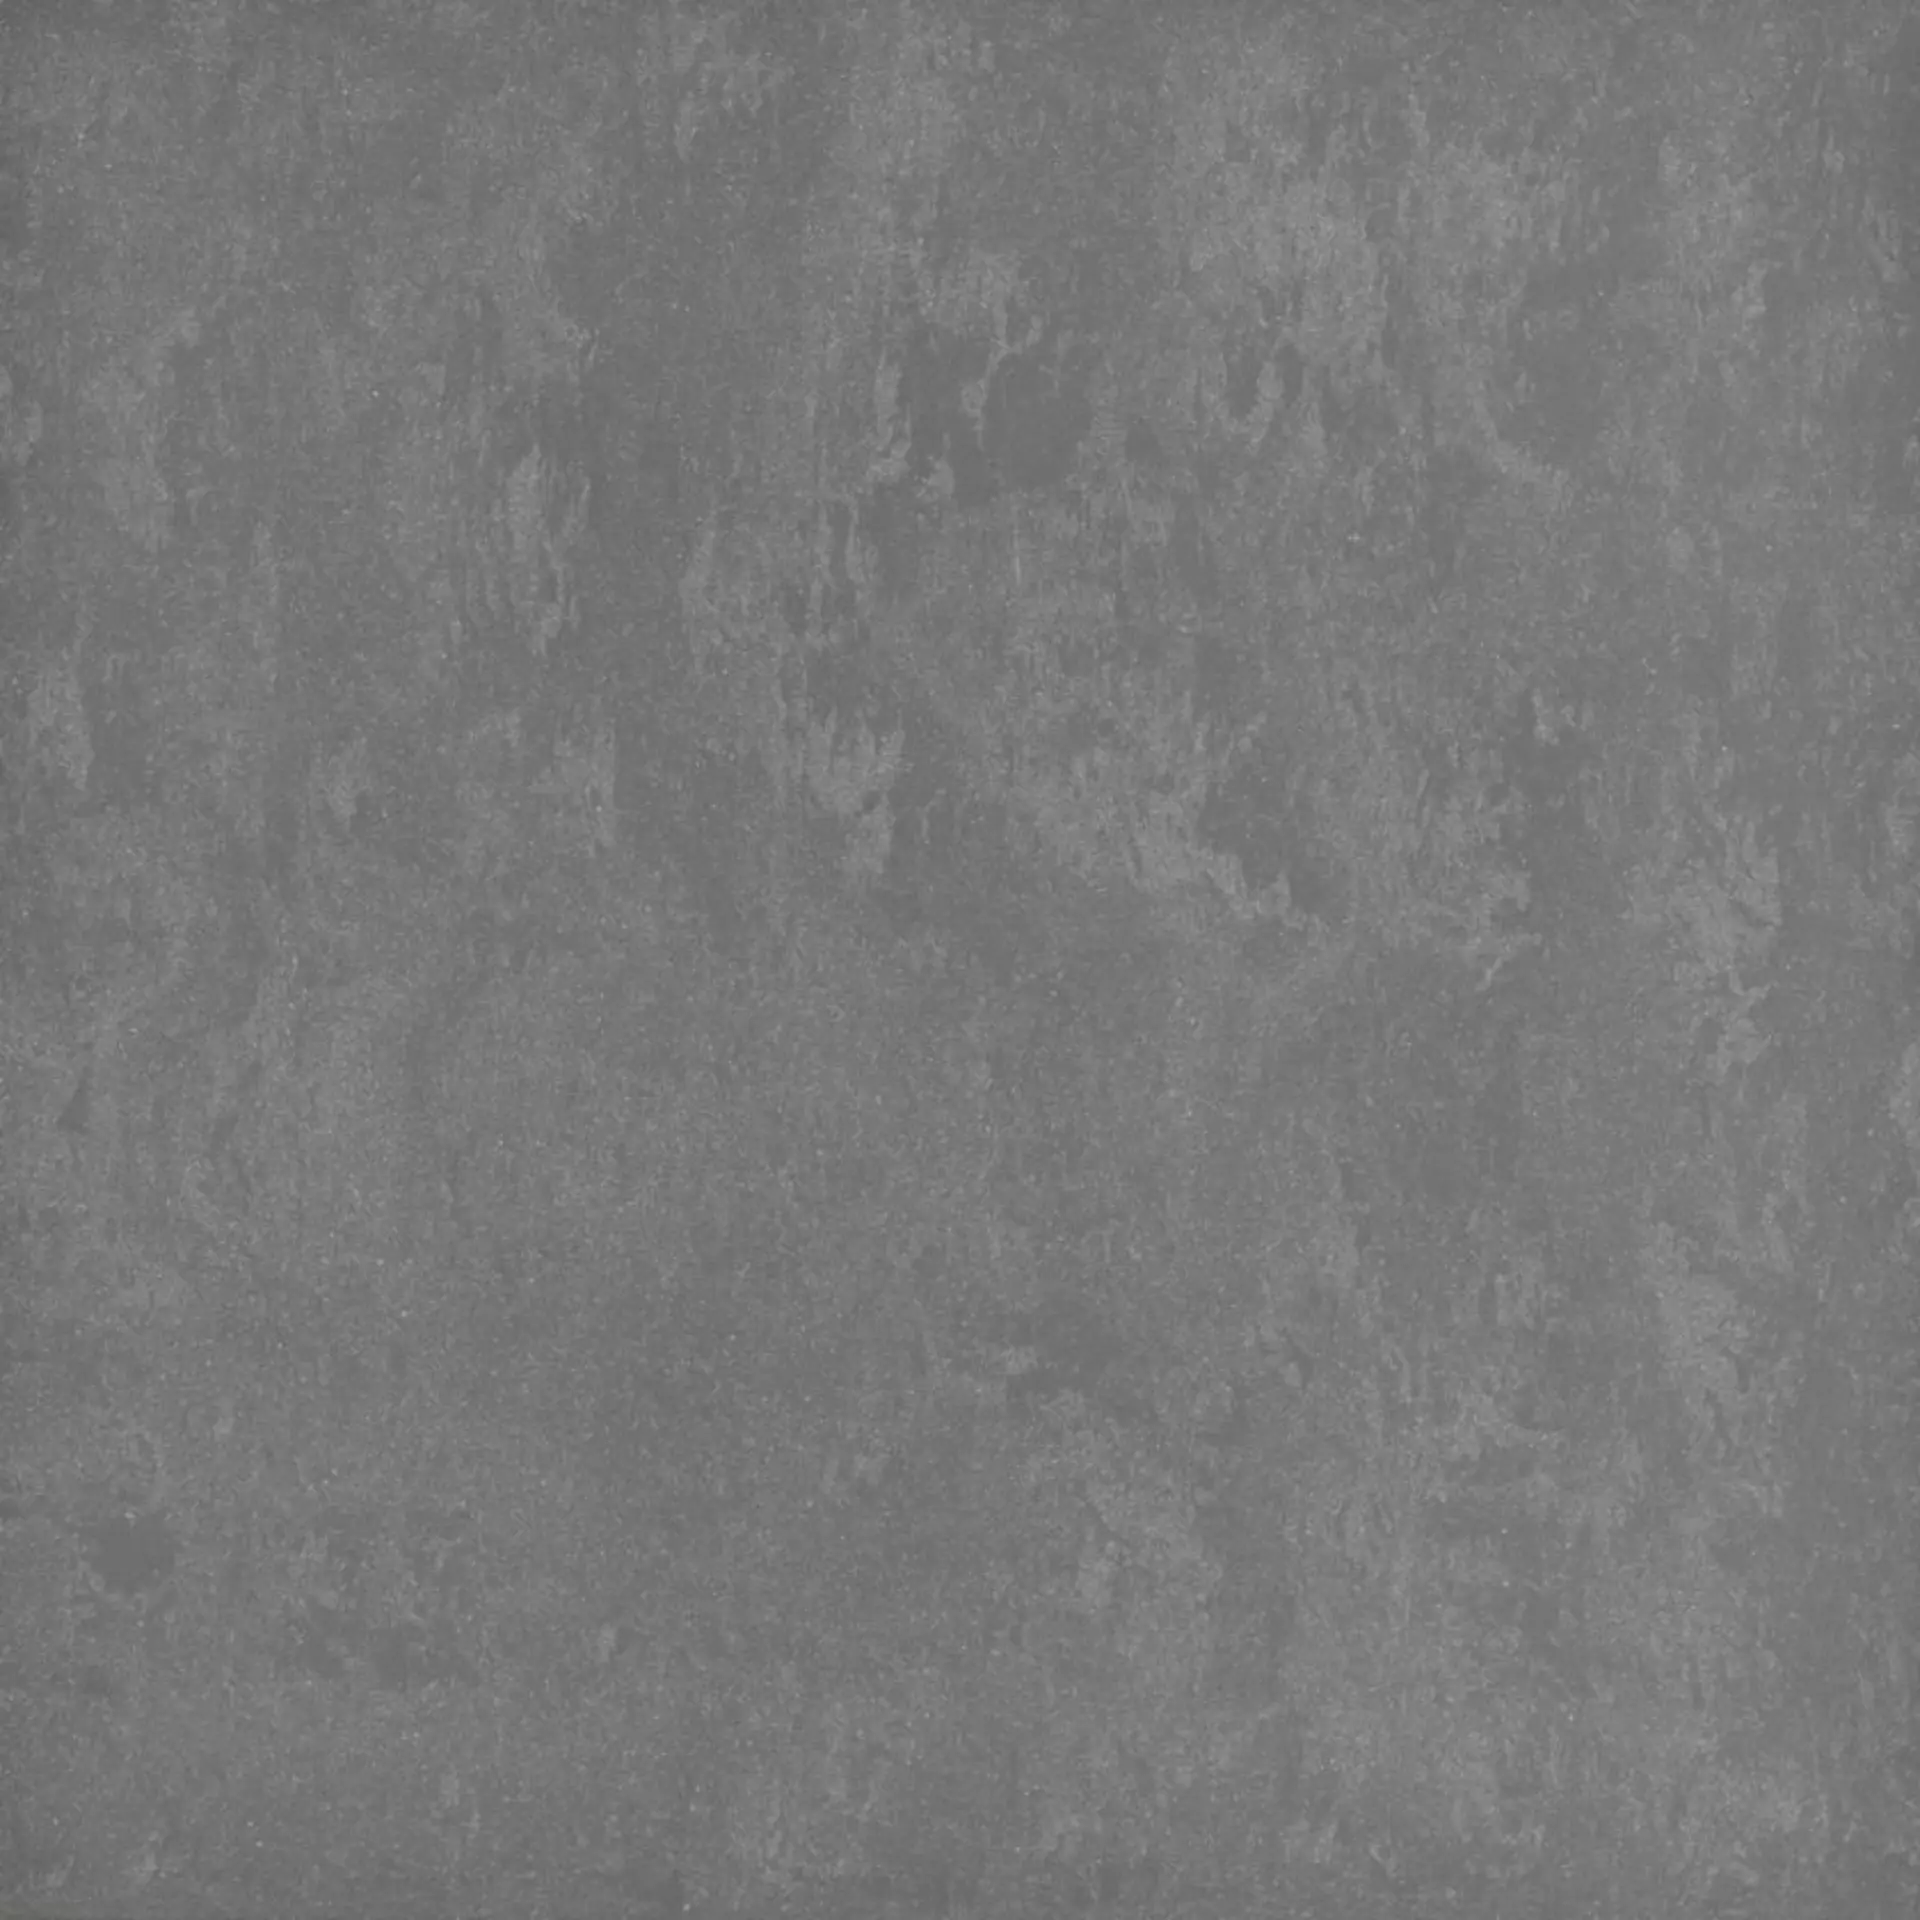 Bodenfliese,Wandfliese Marazzi Sistemn Grigio Scuro Levigato Grigio Scuro MJ07 geschliffen 60x60cm rektifiziert 10,5mm